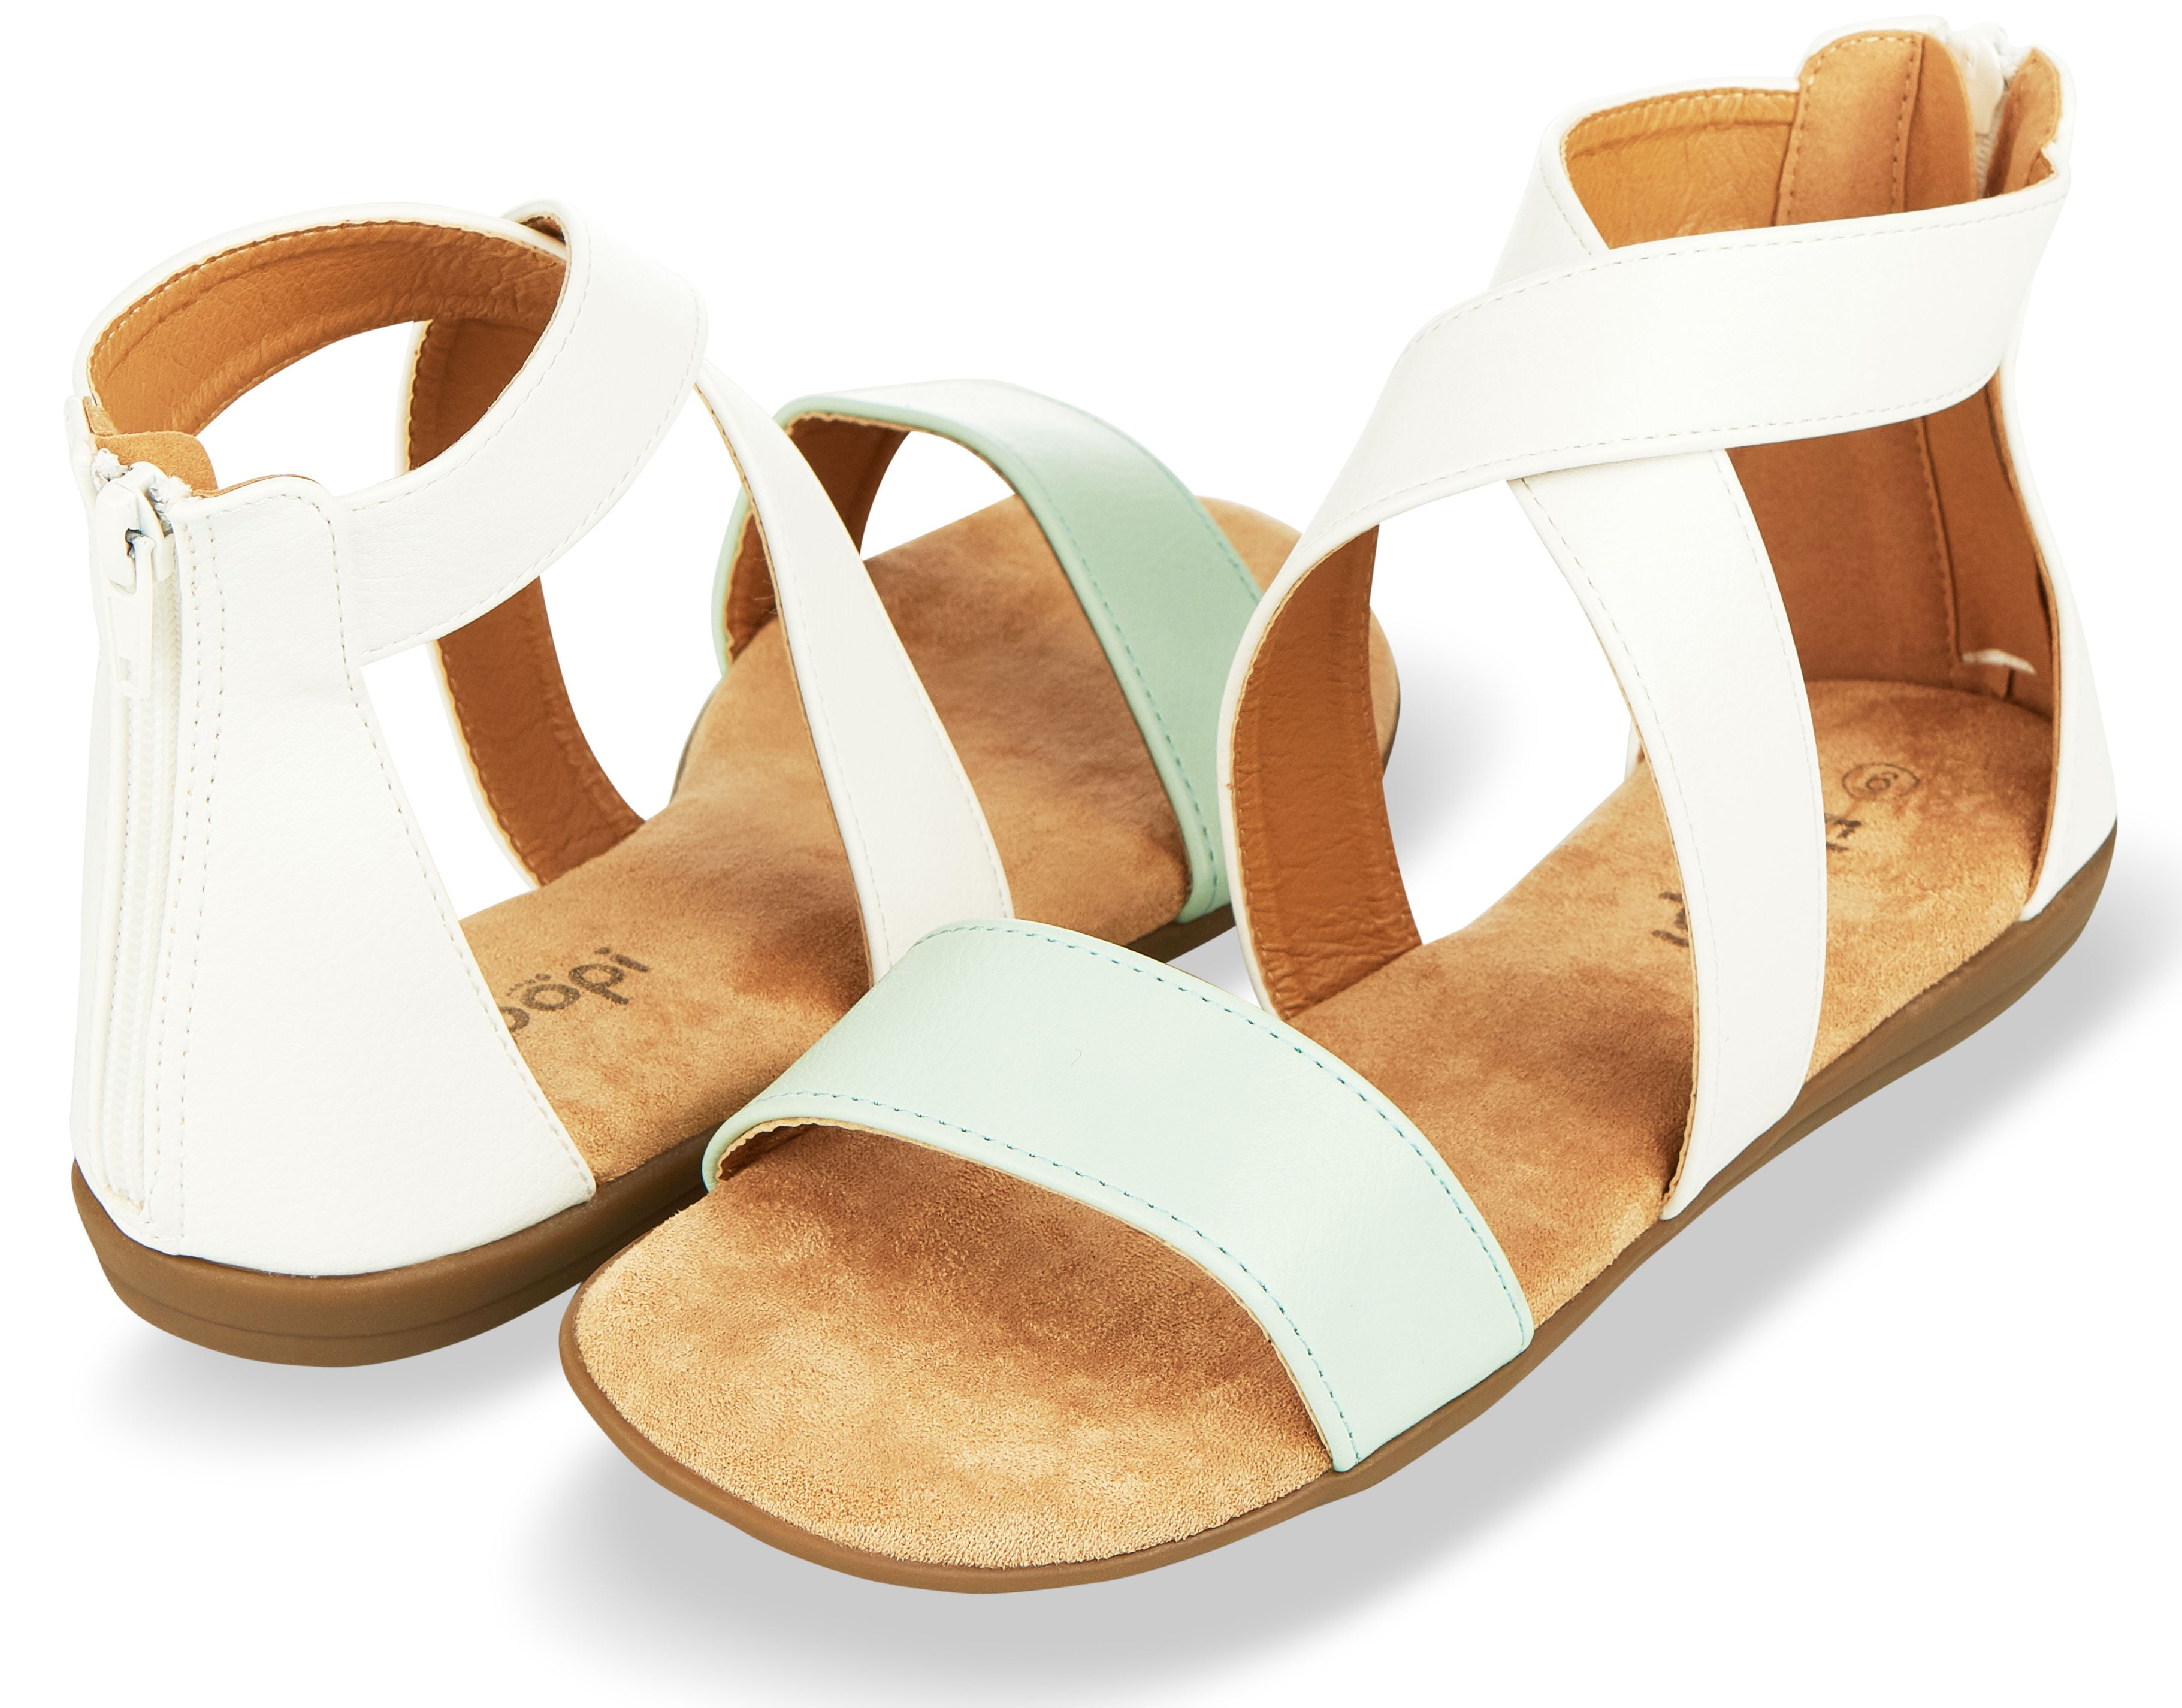 Floopi - Floopi Sandals for Women | Open Toe, Gladiator/Criss Cross ...